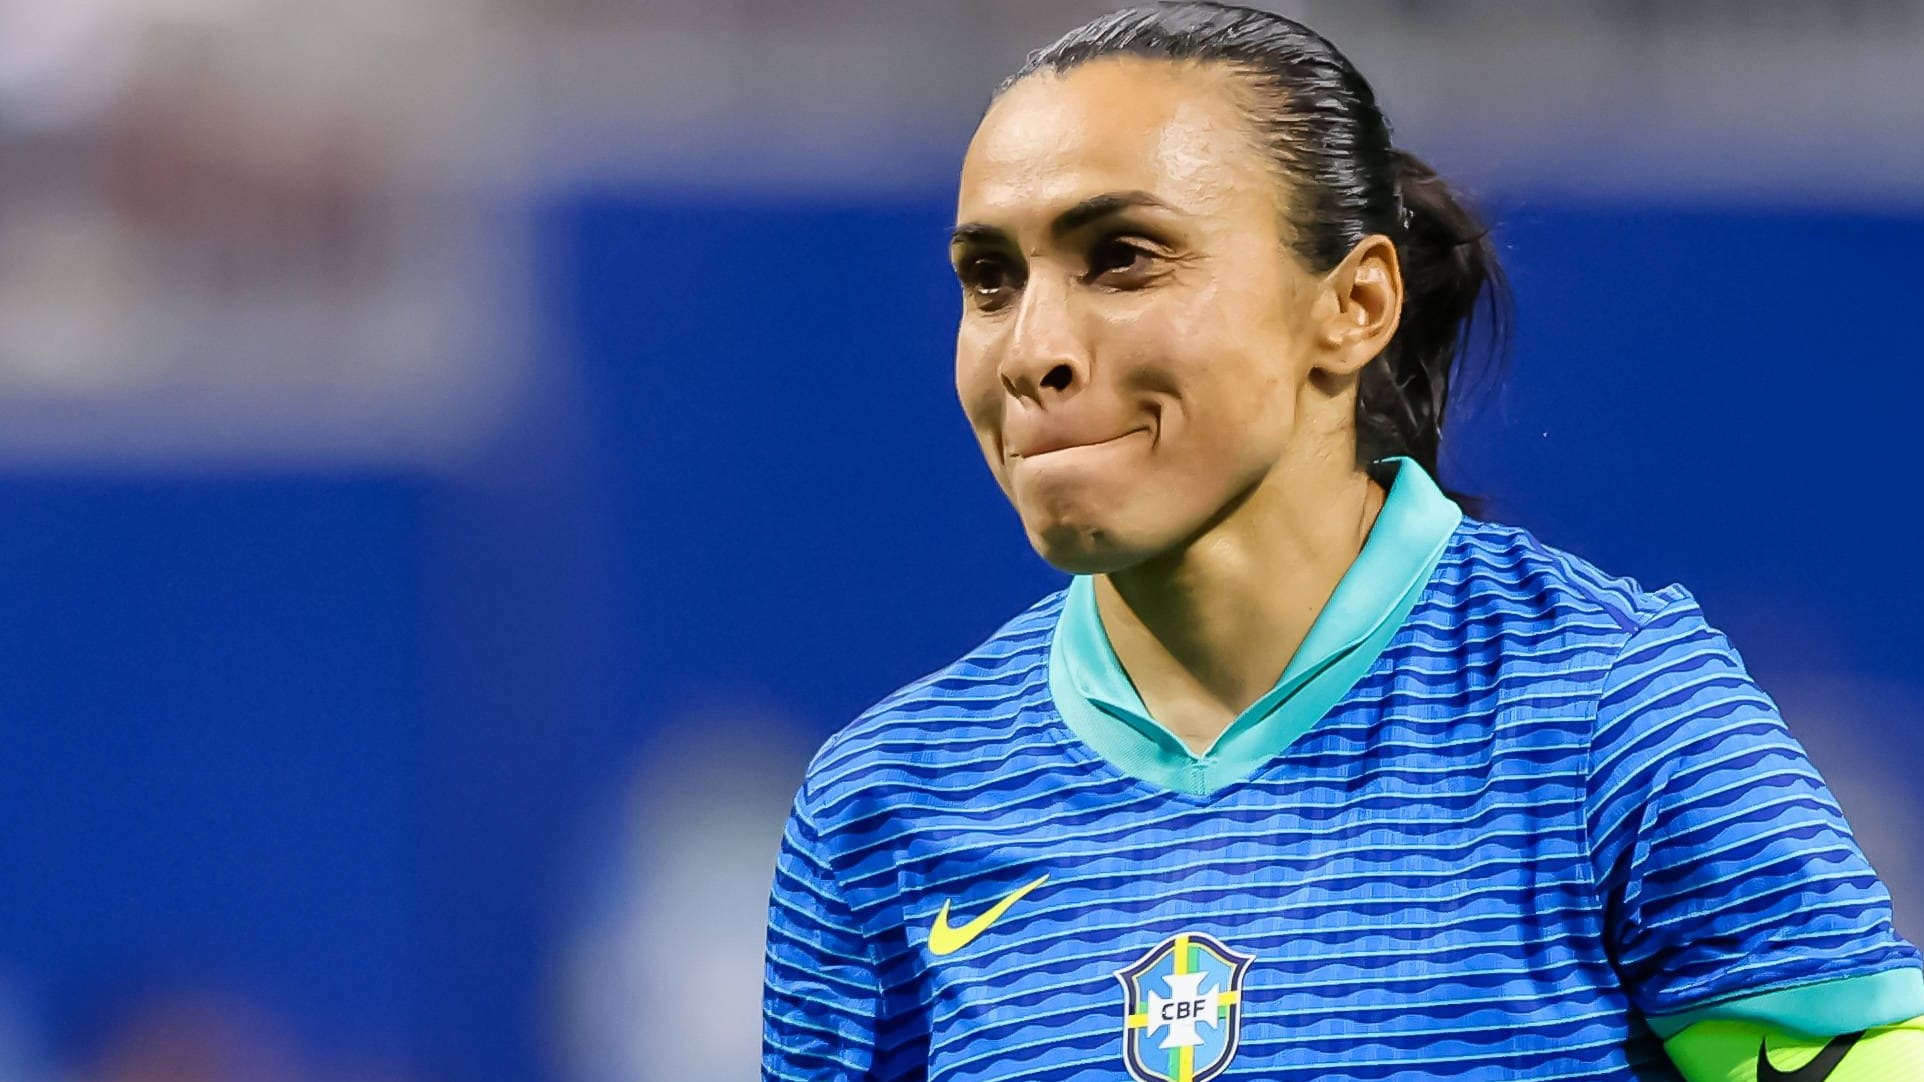 Frauenfußball: Marta tritt aus der 